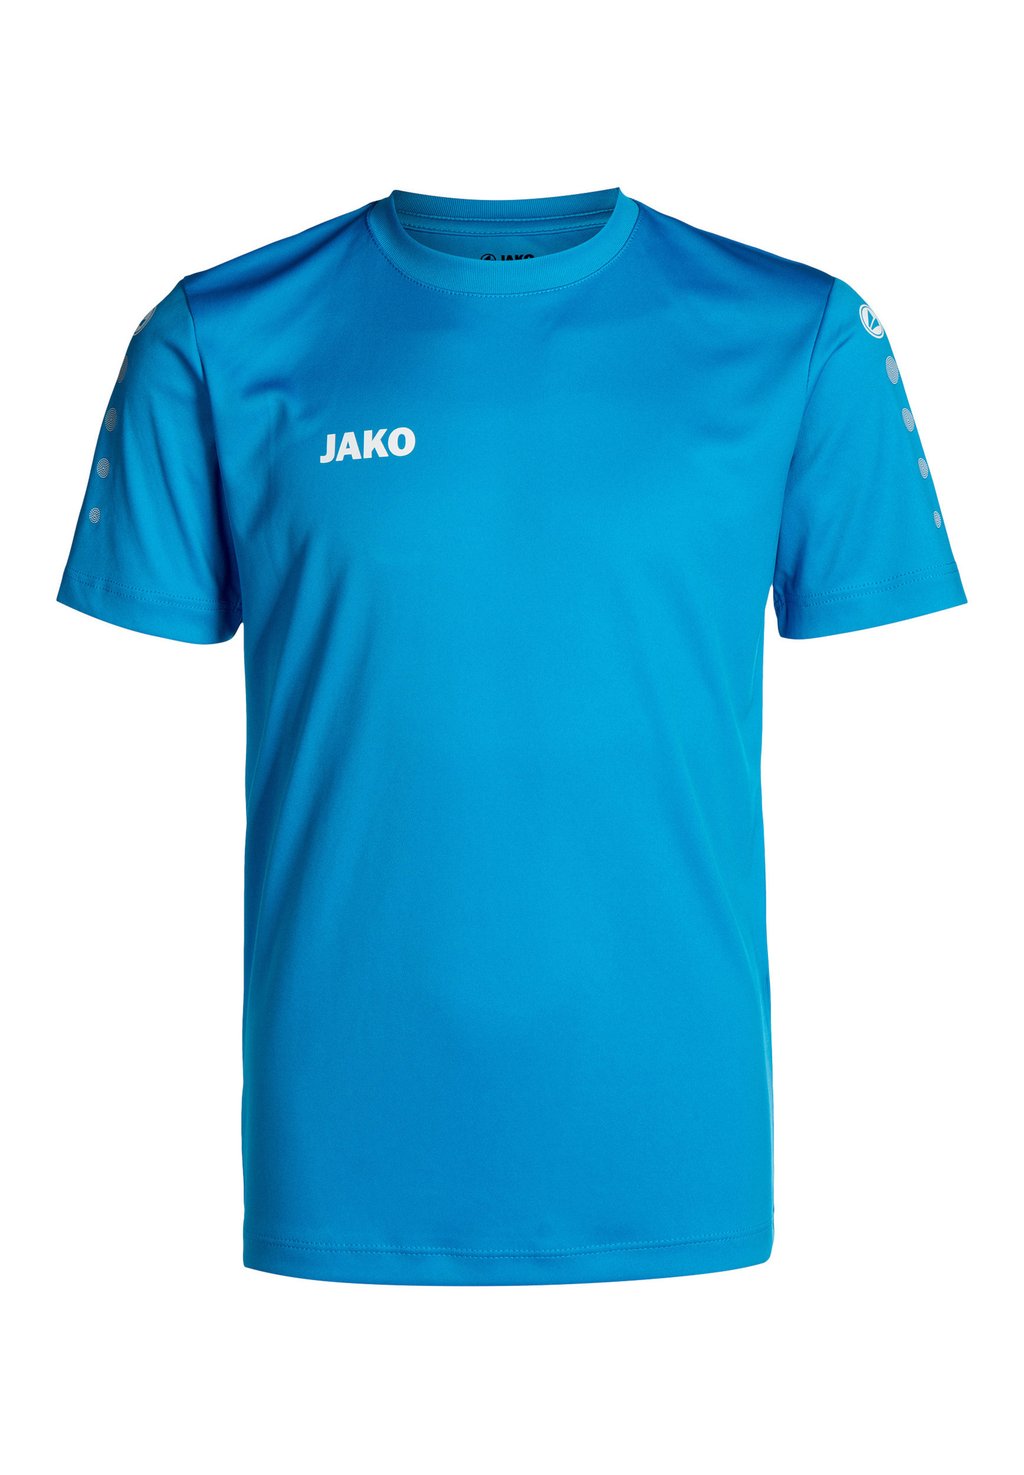 Спортивная футболка KURZARM FUSSBALL TEAM JAKO, цвет jako blau katarzyna brożek innowacyjność przedsiębiorstw jako czynnik wzrostu gospodarczego przykład krajów grupy wyszehradzkiej